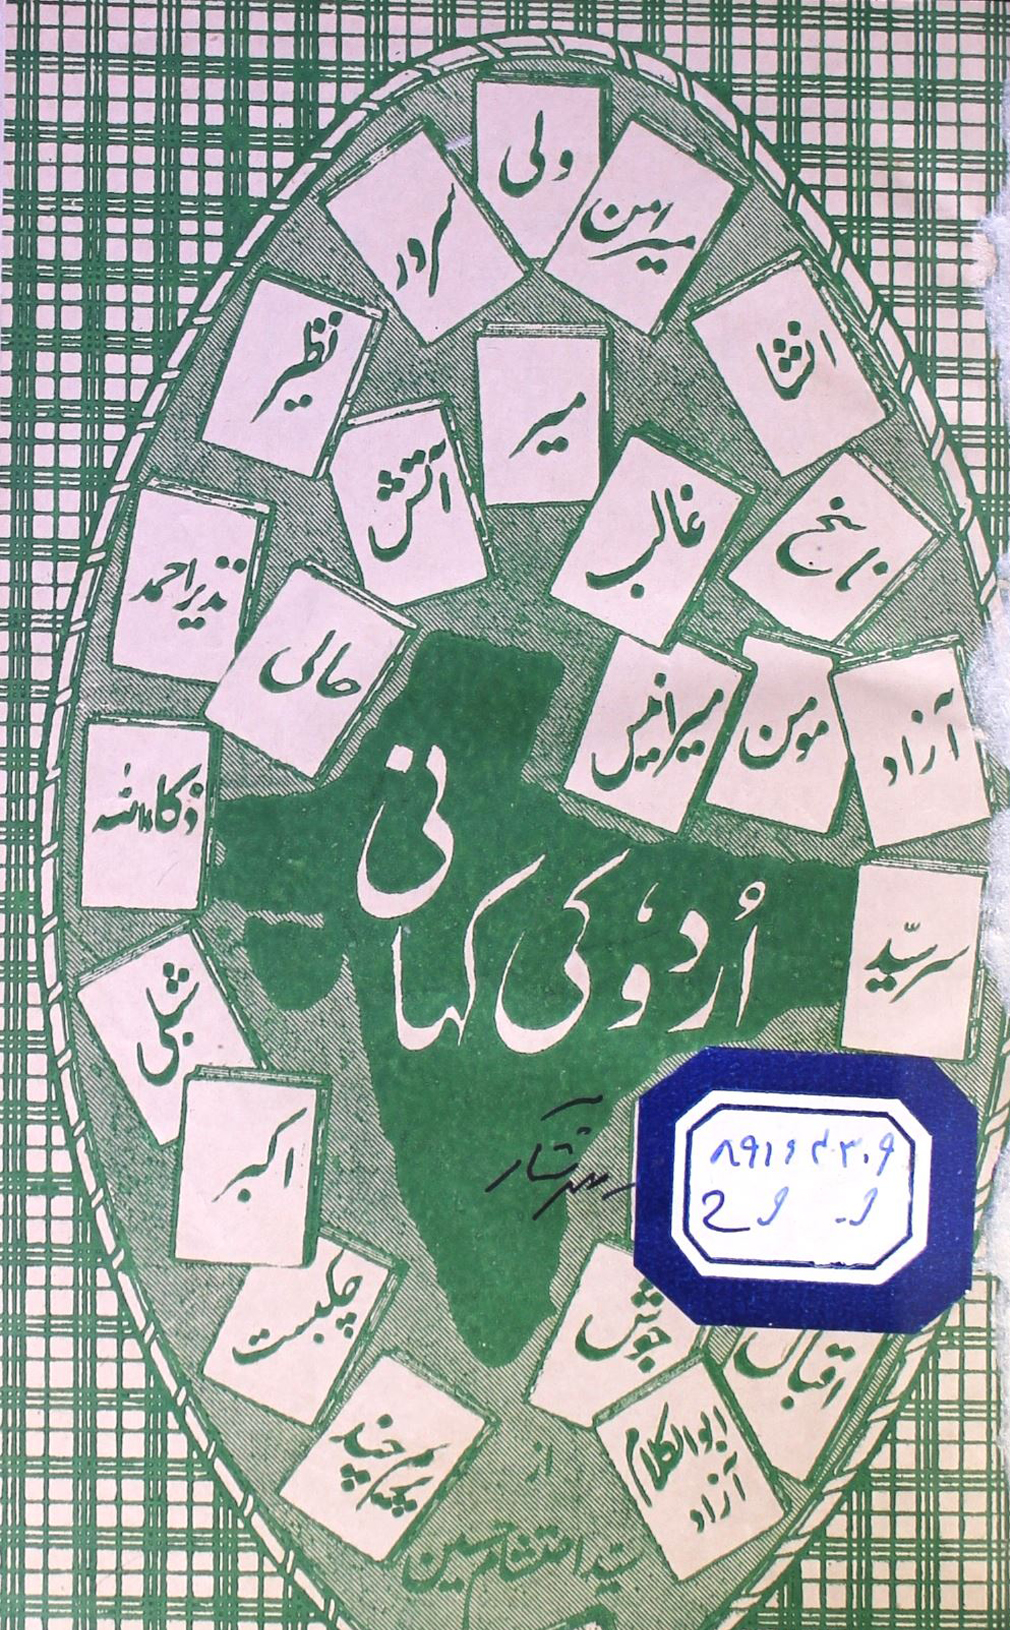 Urdu Ki Kahani